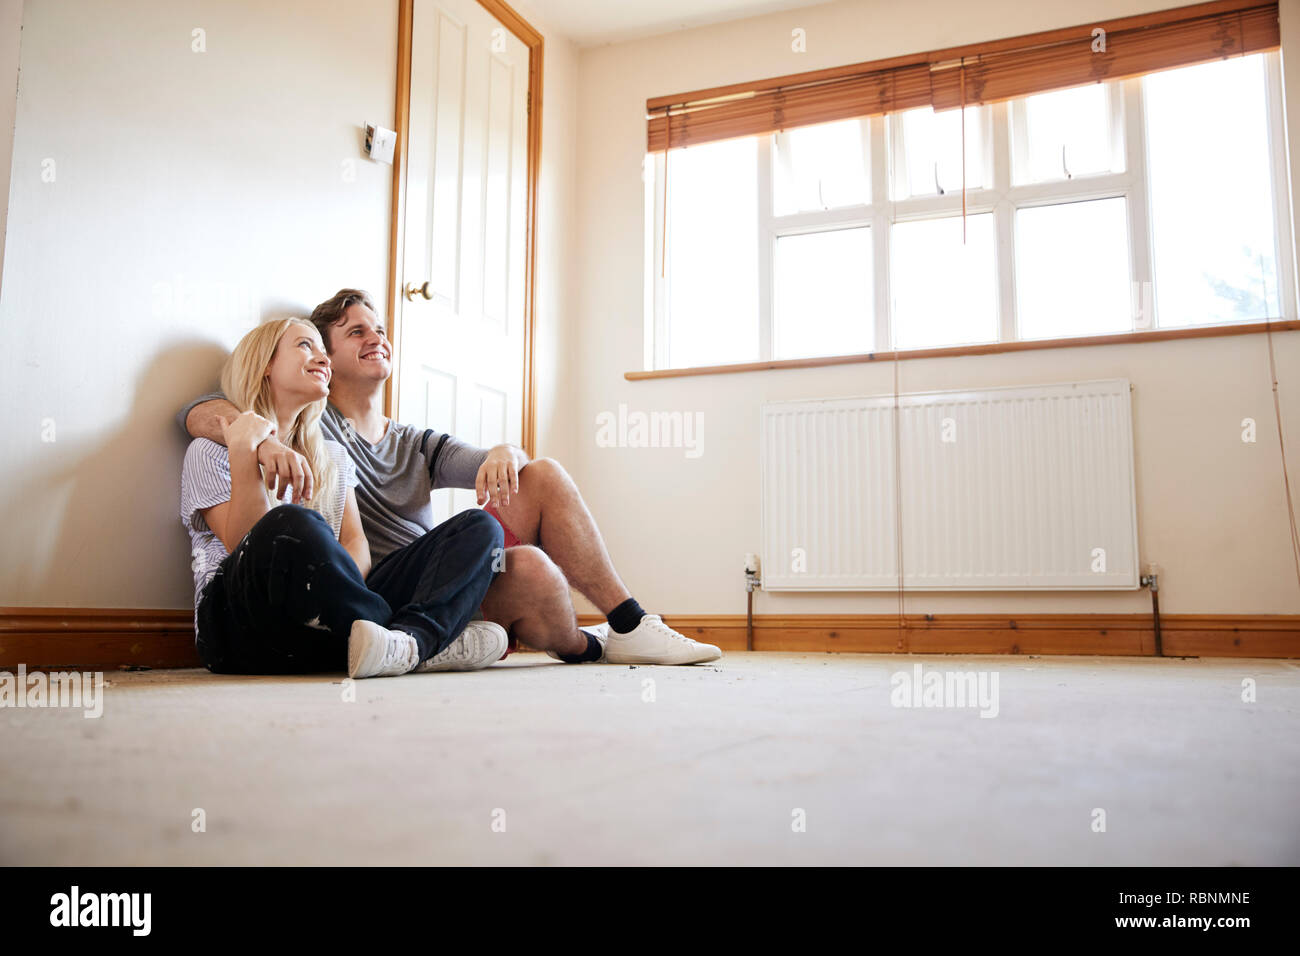 Paar auf Fußboden im leeren Raum der neuen Home Planung Design Stockfoto